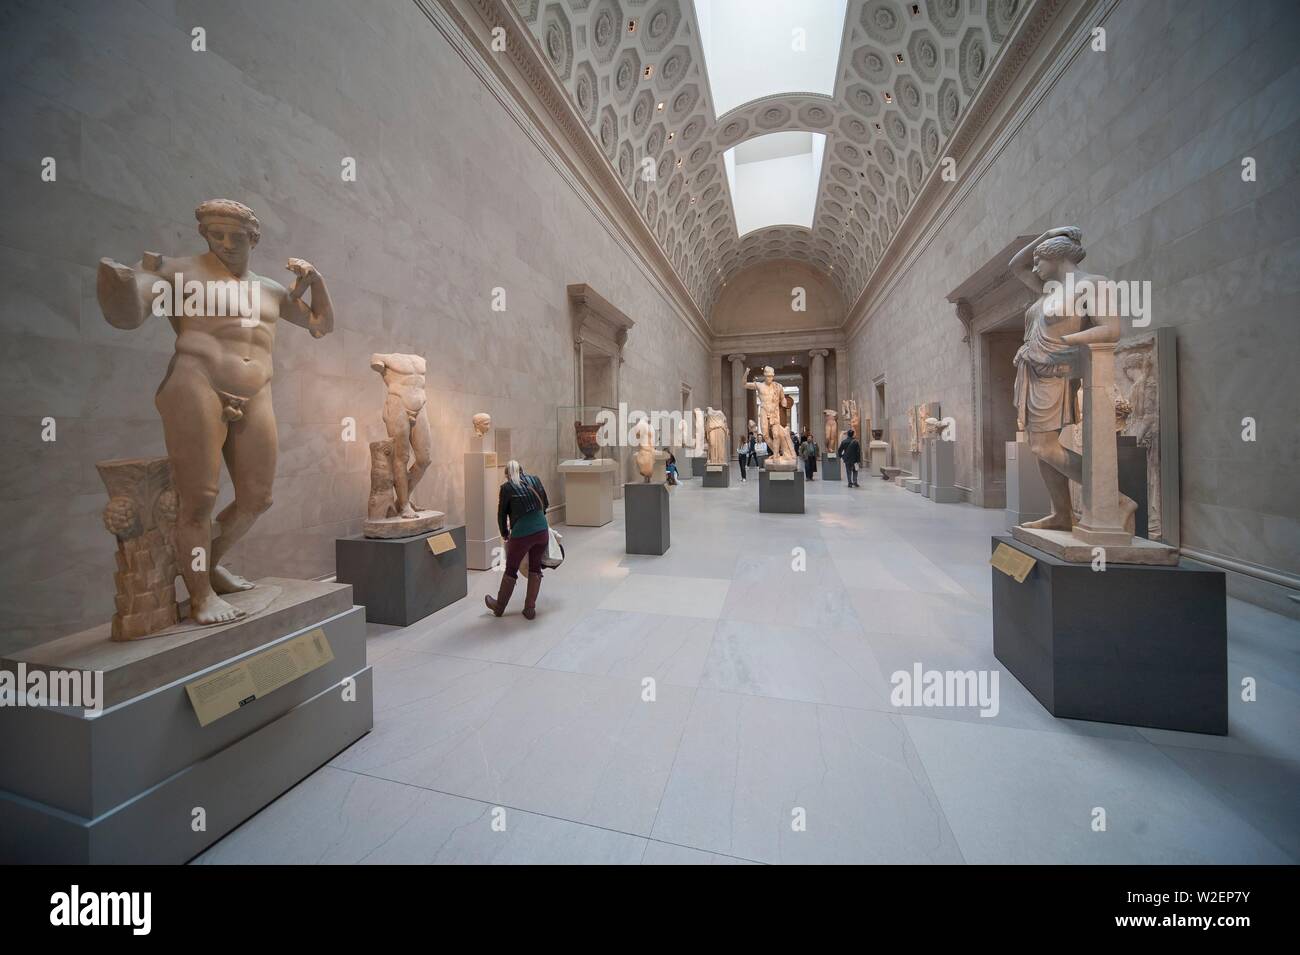 Galería de escultura clásica, Metropolitan Museum of Art de New York. Stock Photo